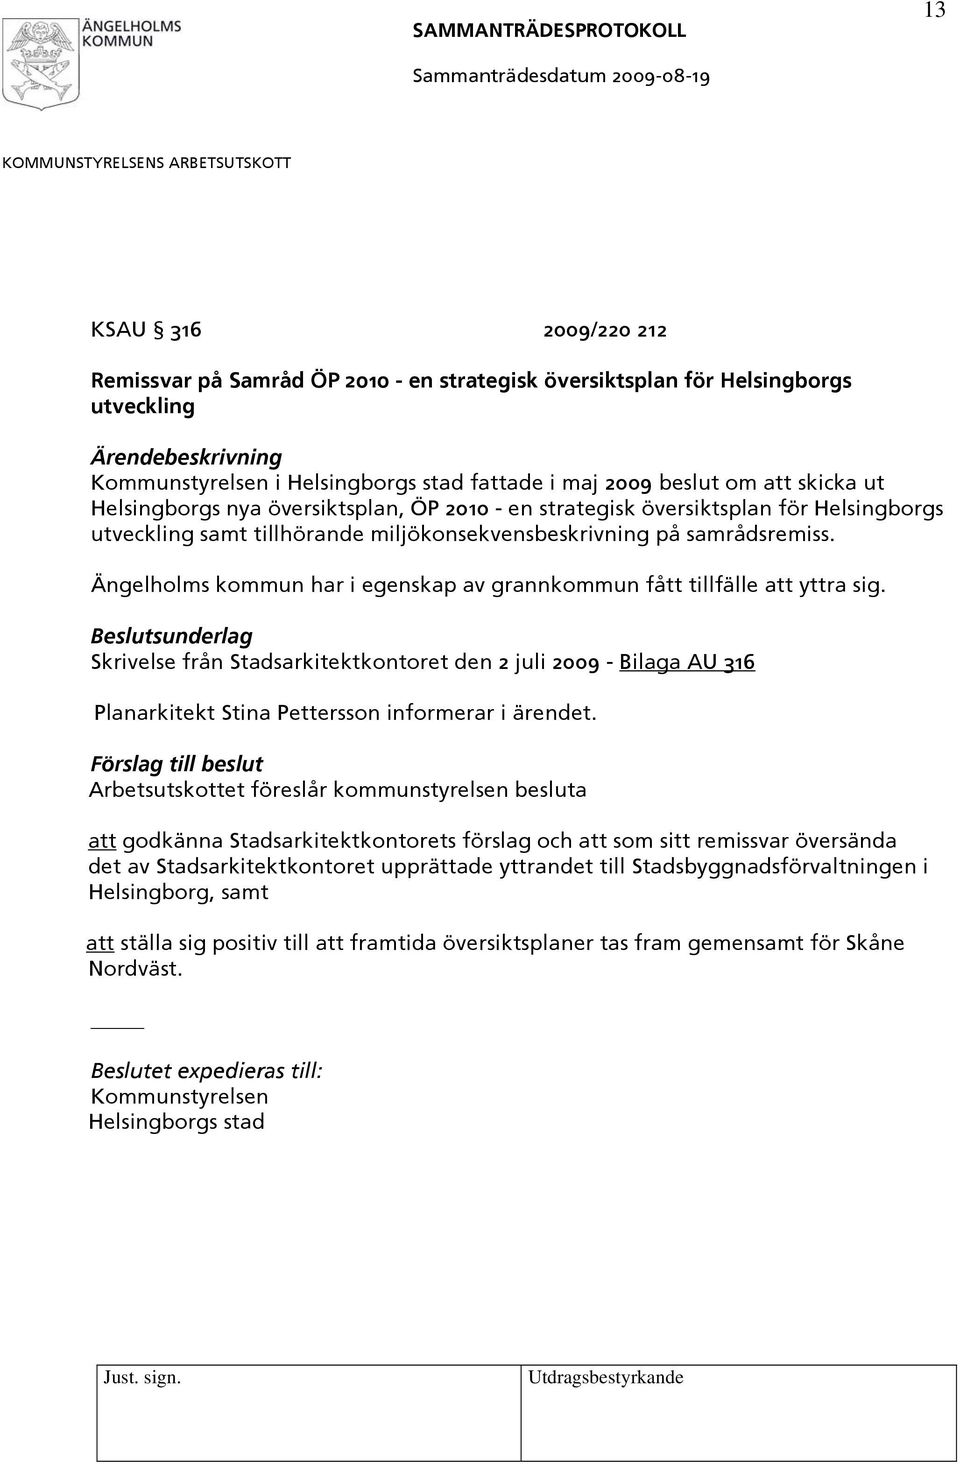 Ängelholms kommun har i egenskap av grannkommun fått tillfälle att yttra sig. Skrivelse från Stadsarkitektkontoret den 2 juli 2009 - Bilaga AU 316 Planarkitekt Stina Pettersson informerar i ärendet.